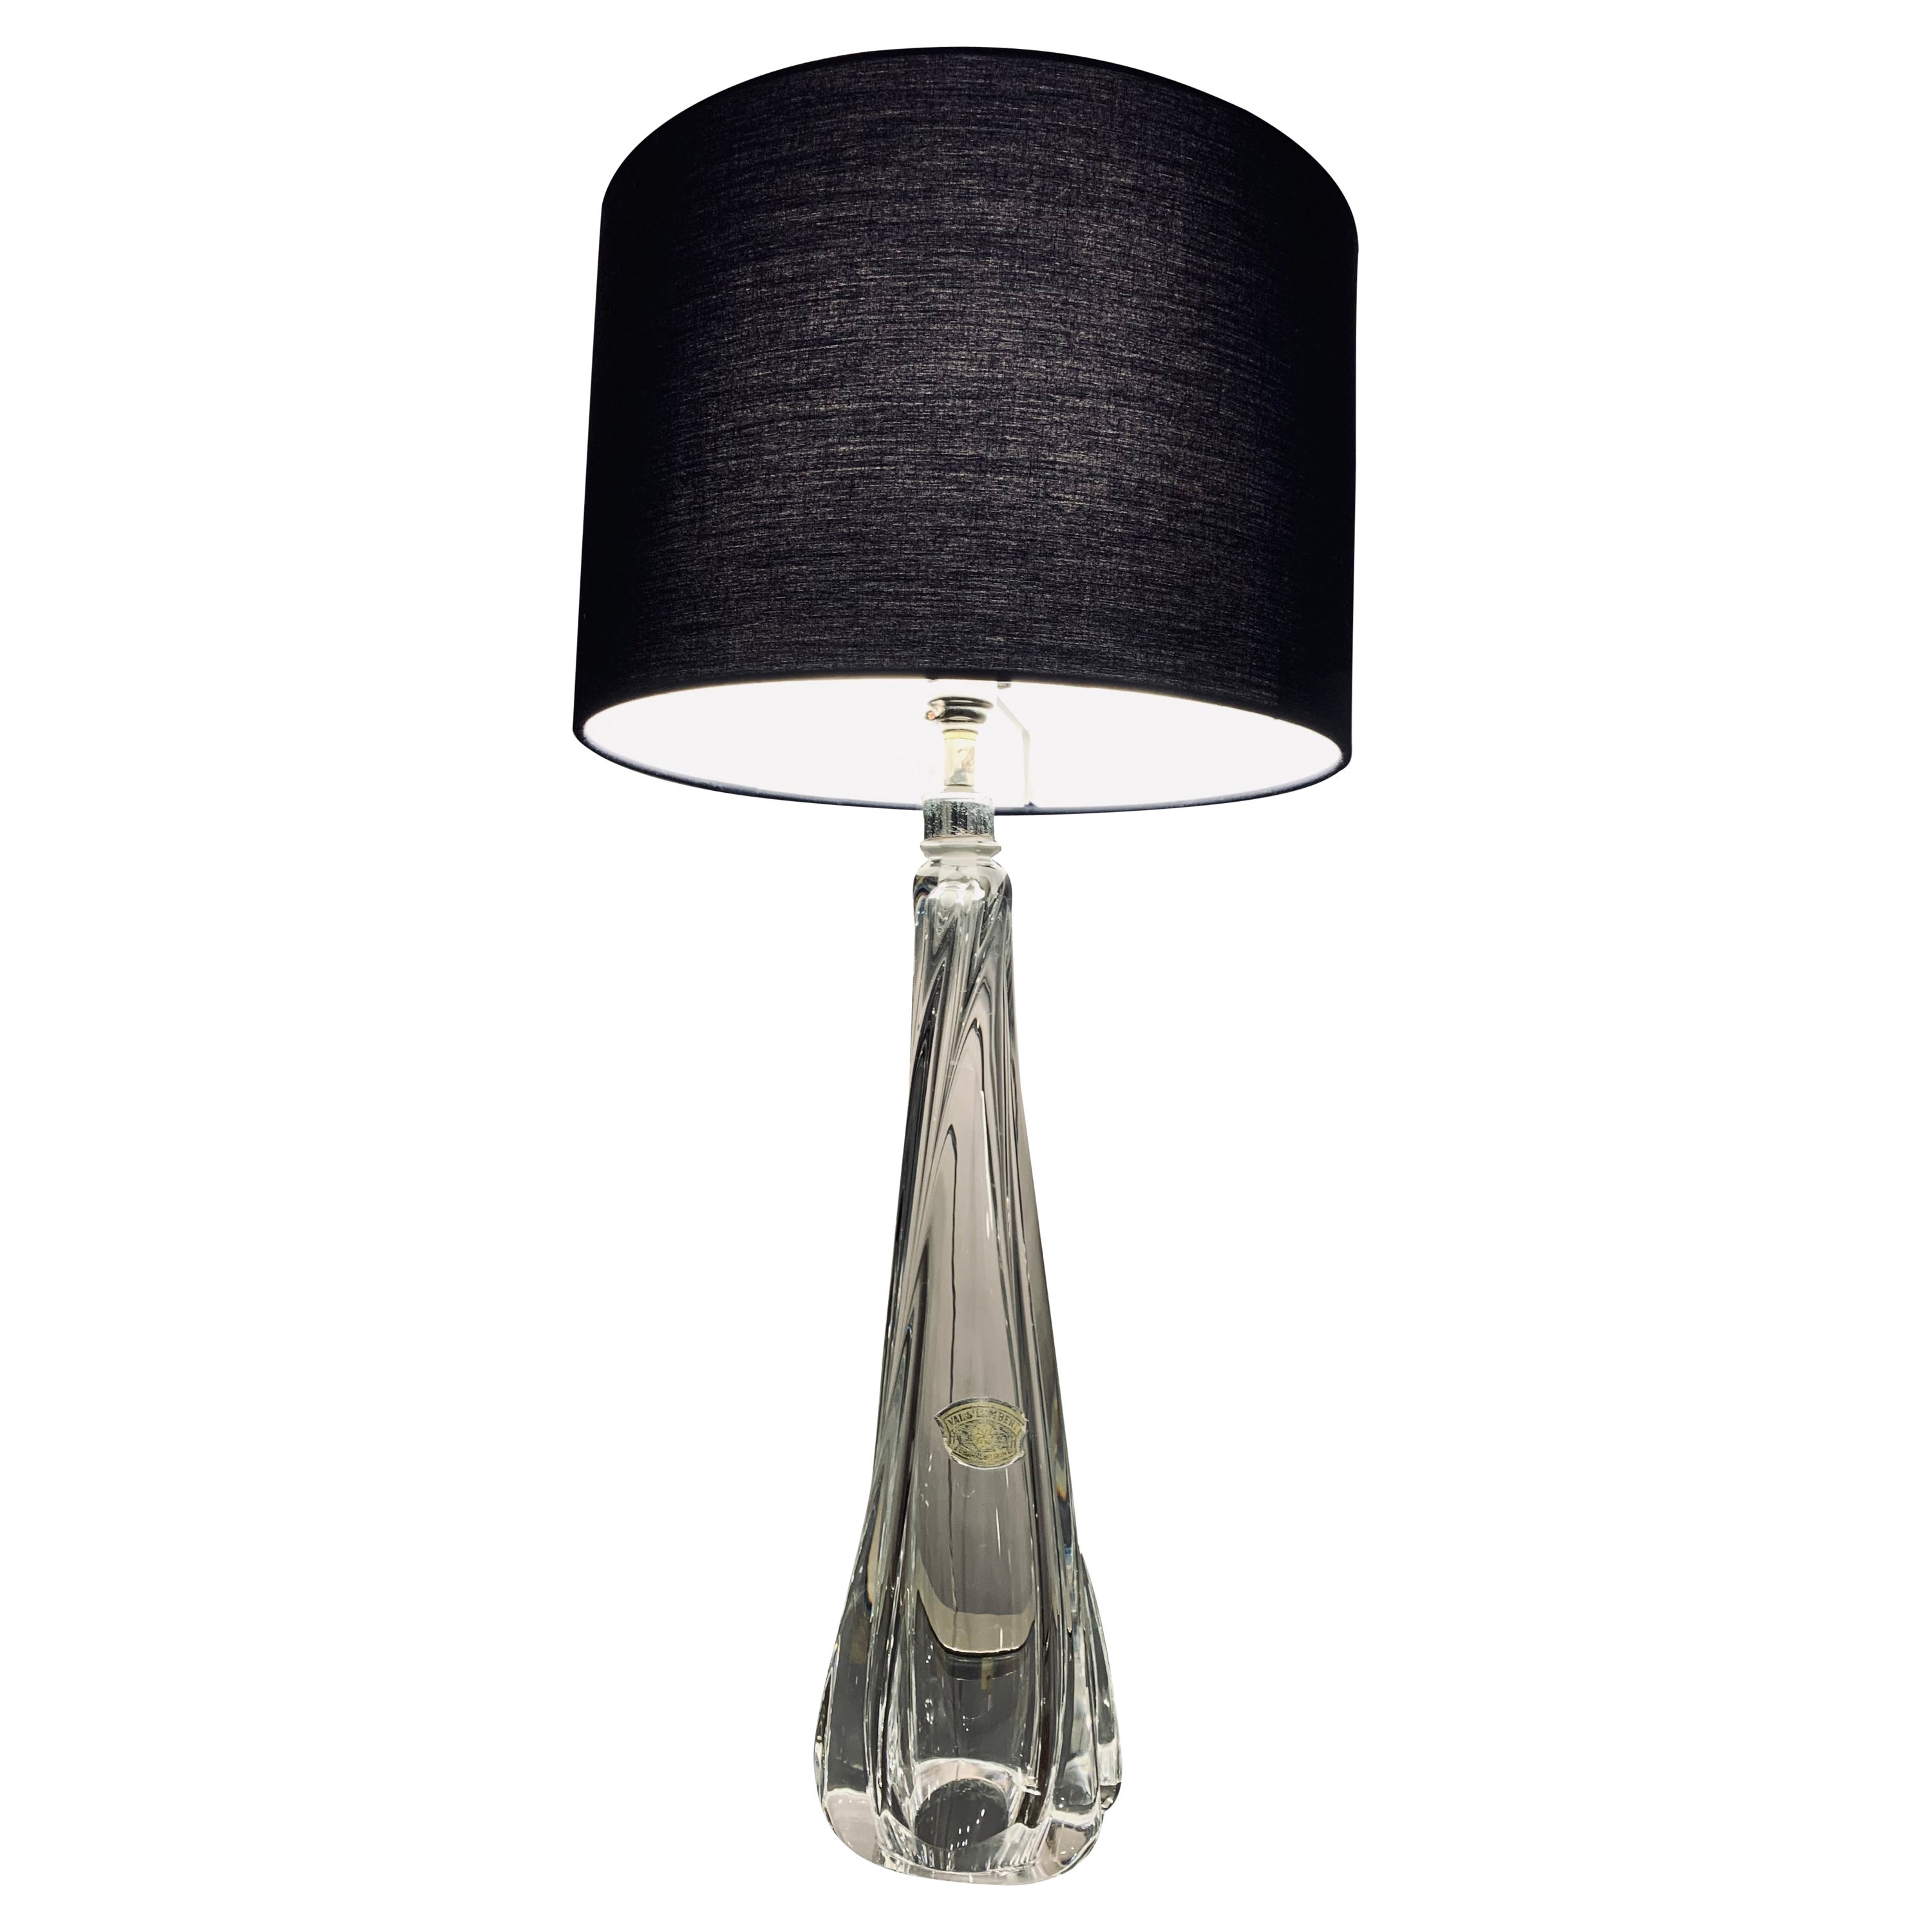 Lampe de table des années 1950 Val Saint Lambert en verre de cristal clair et chrome, avec label en feuille d'aluminium